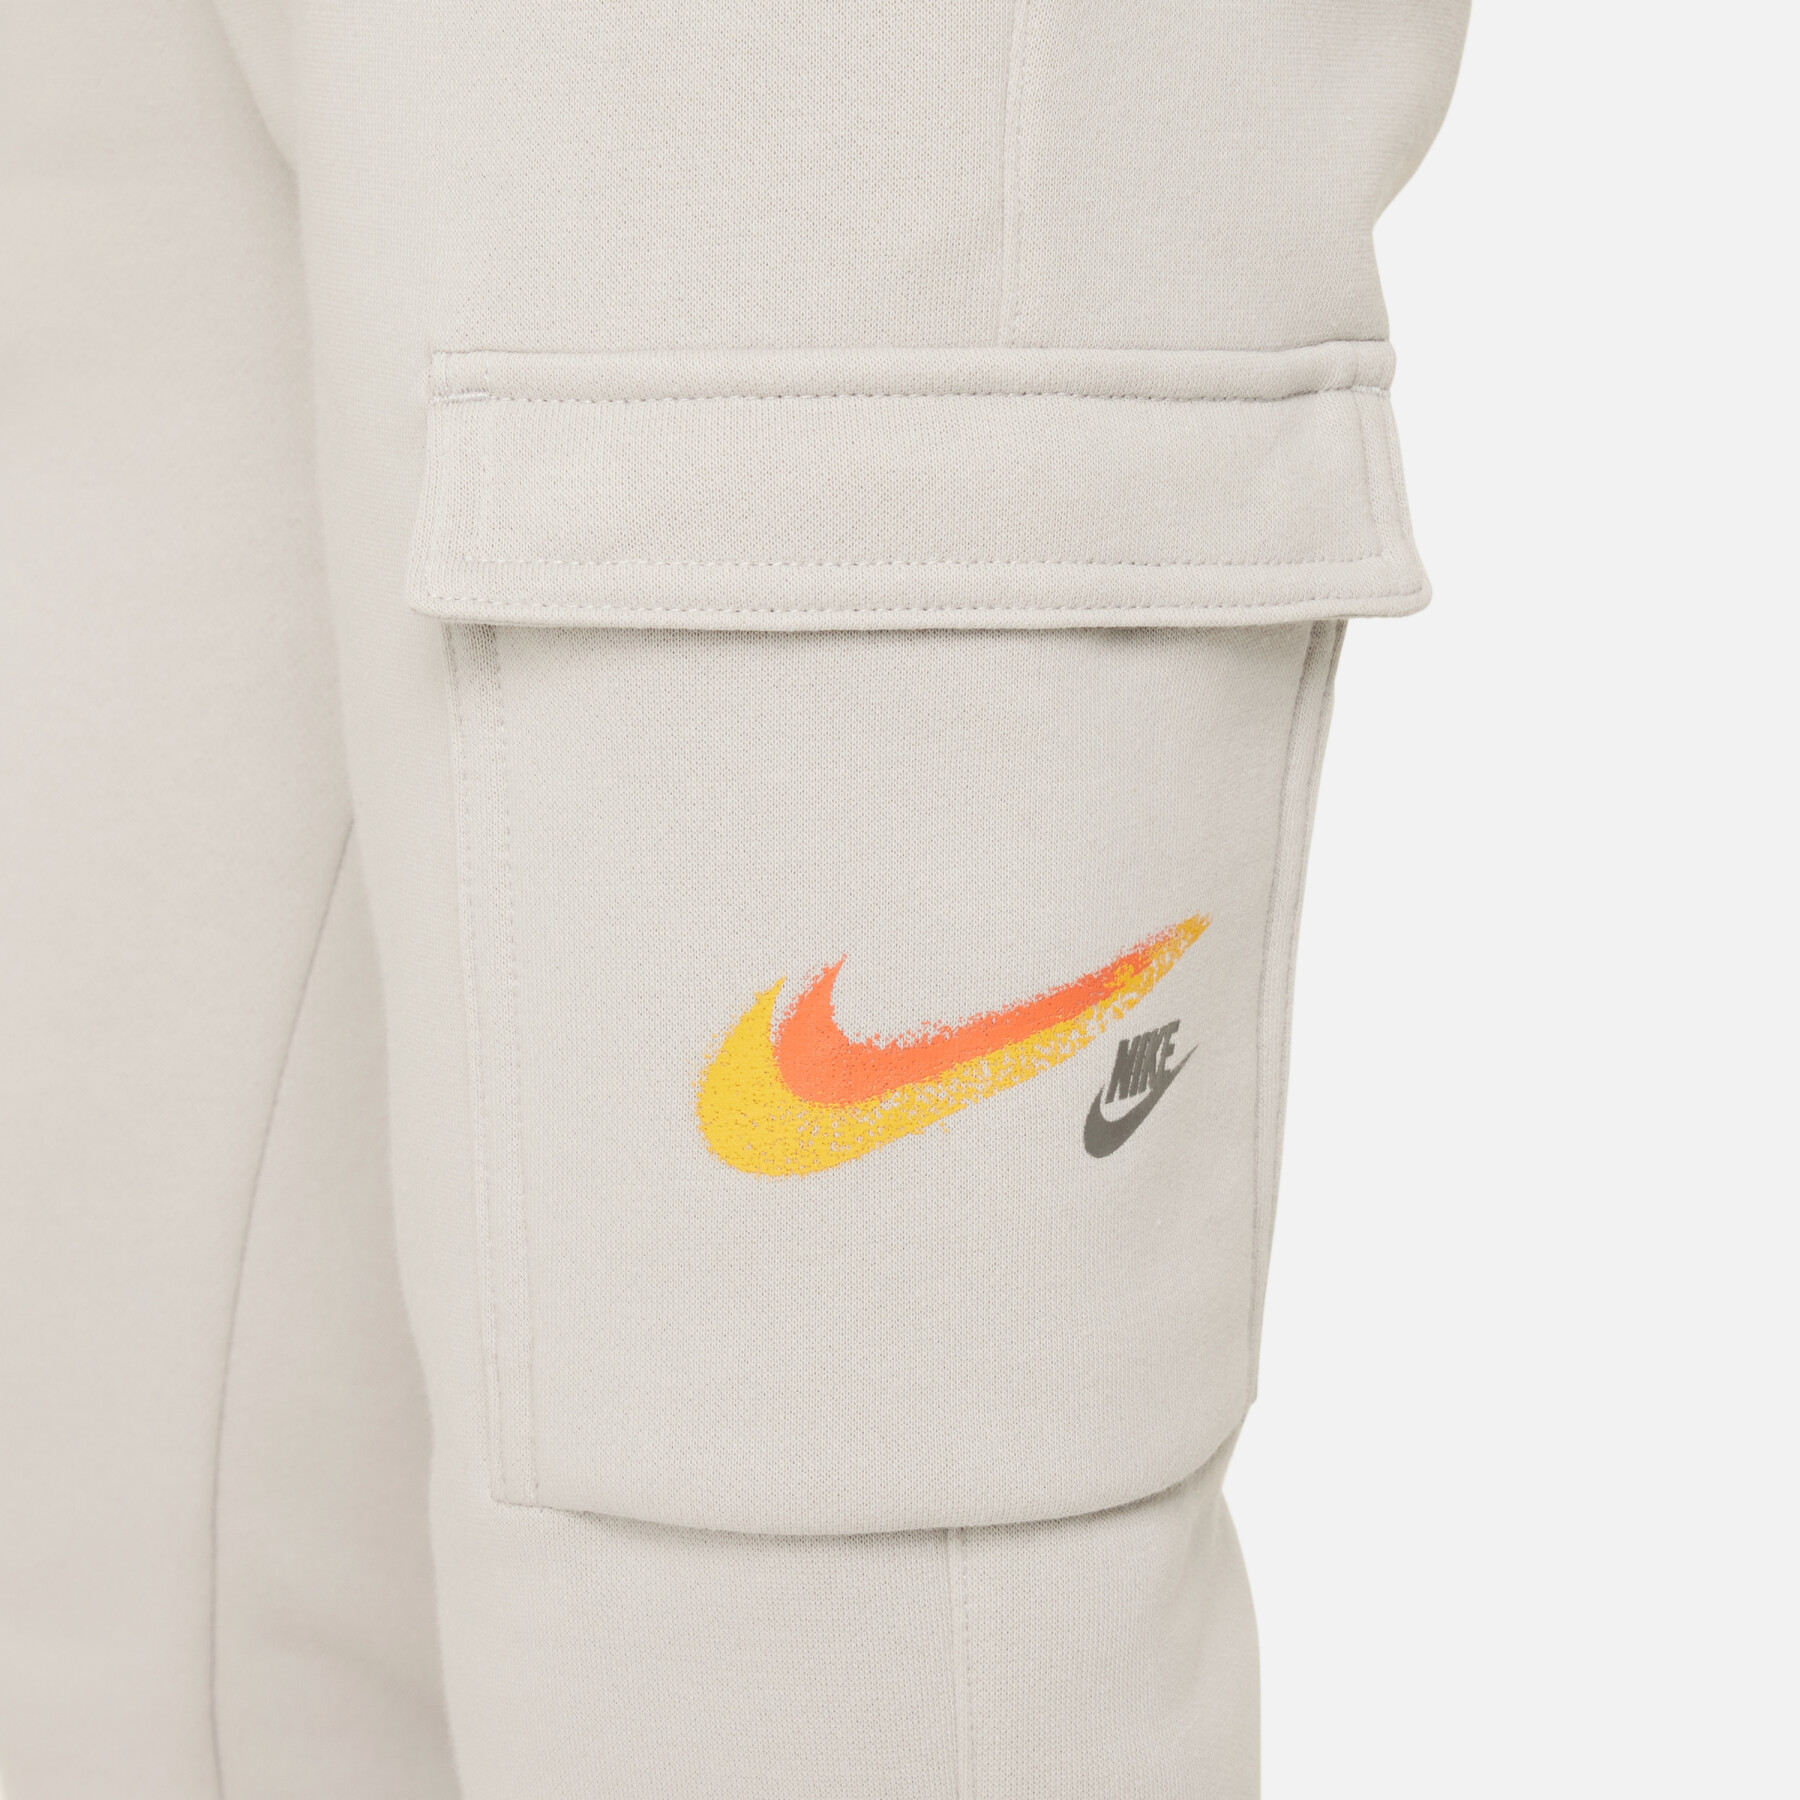 Children's cargo pants Nike Fleece